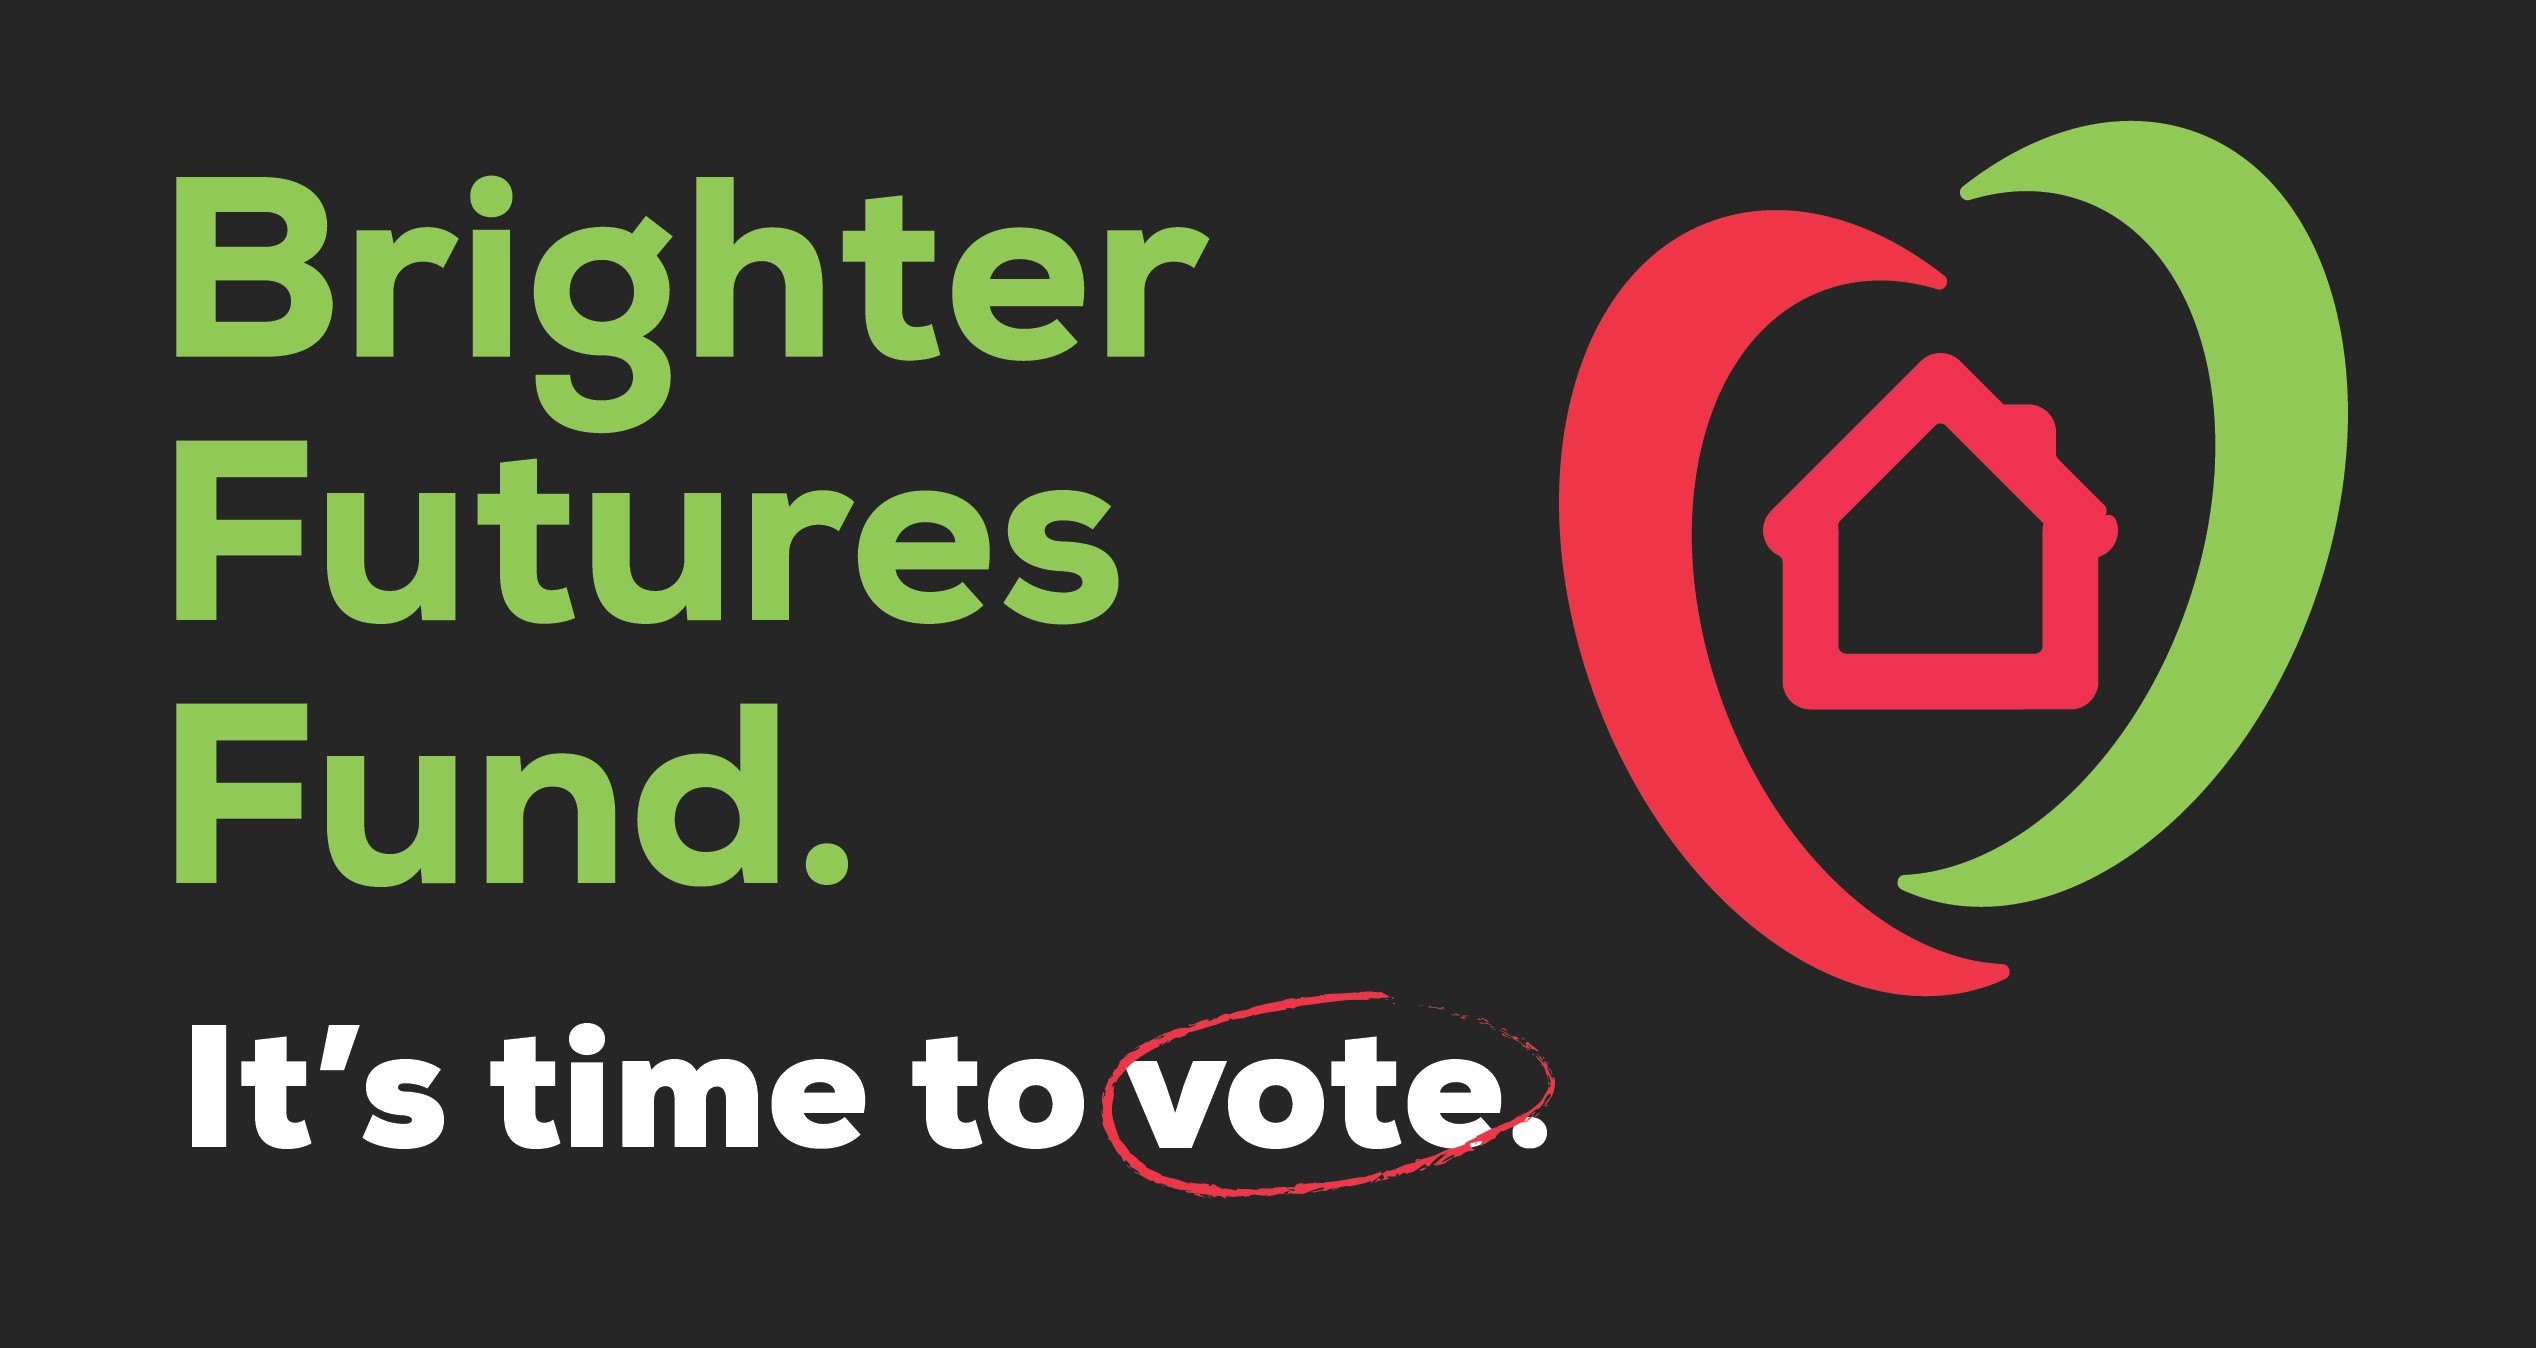 Cast Your Vote for a Brighter Future!